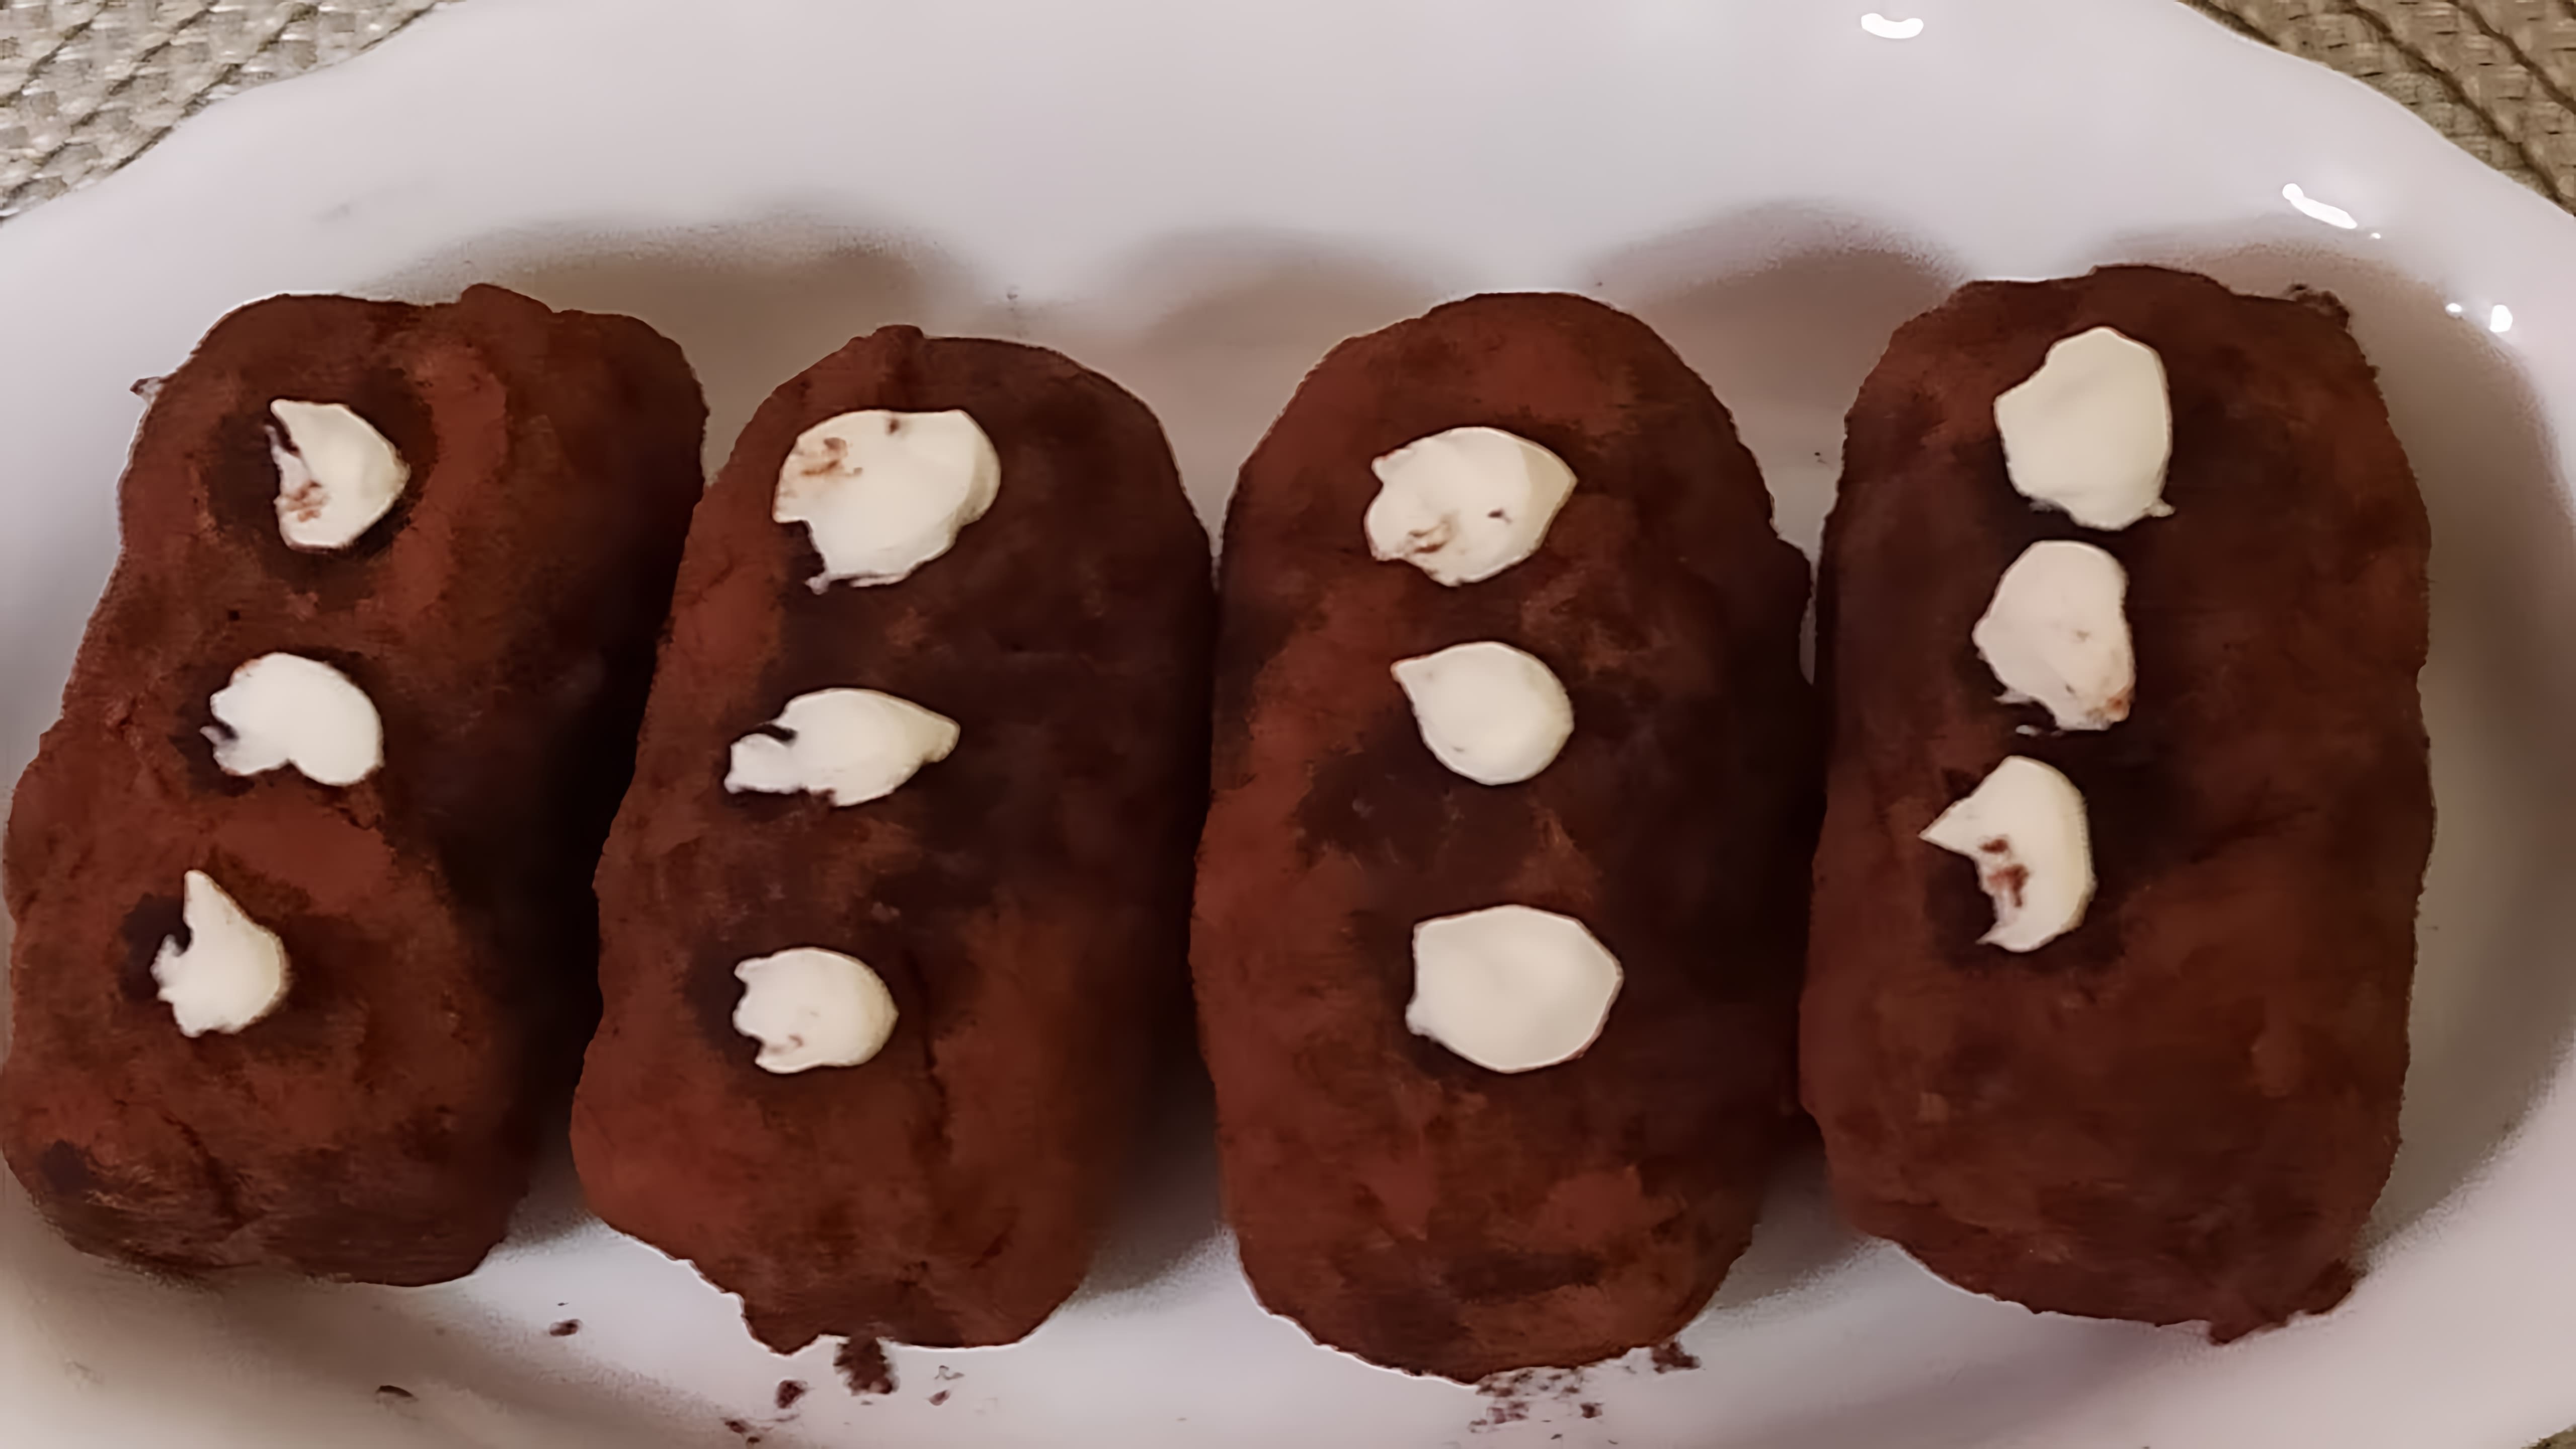 В этом видео демонстрируется рецепт приготовления пирожного "Картошка" на кето-диете